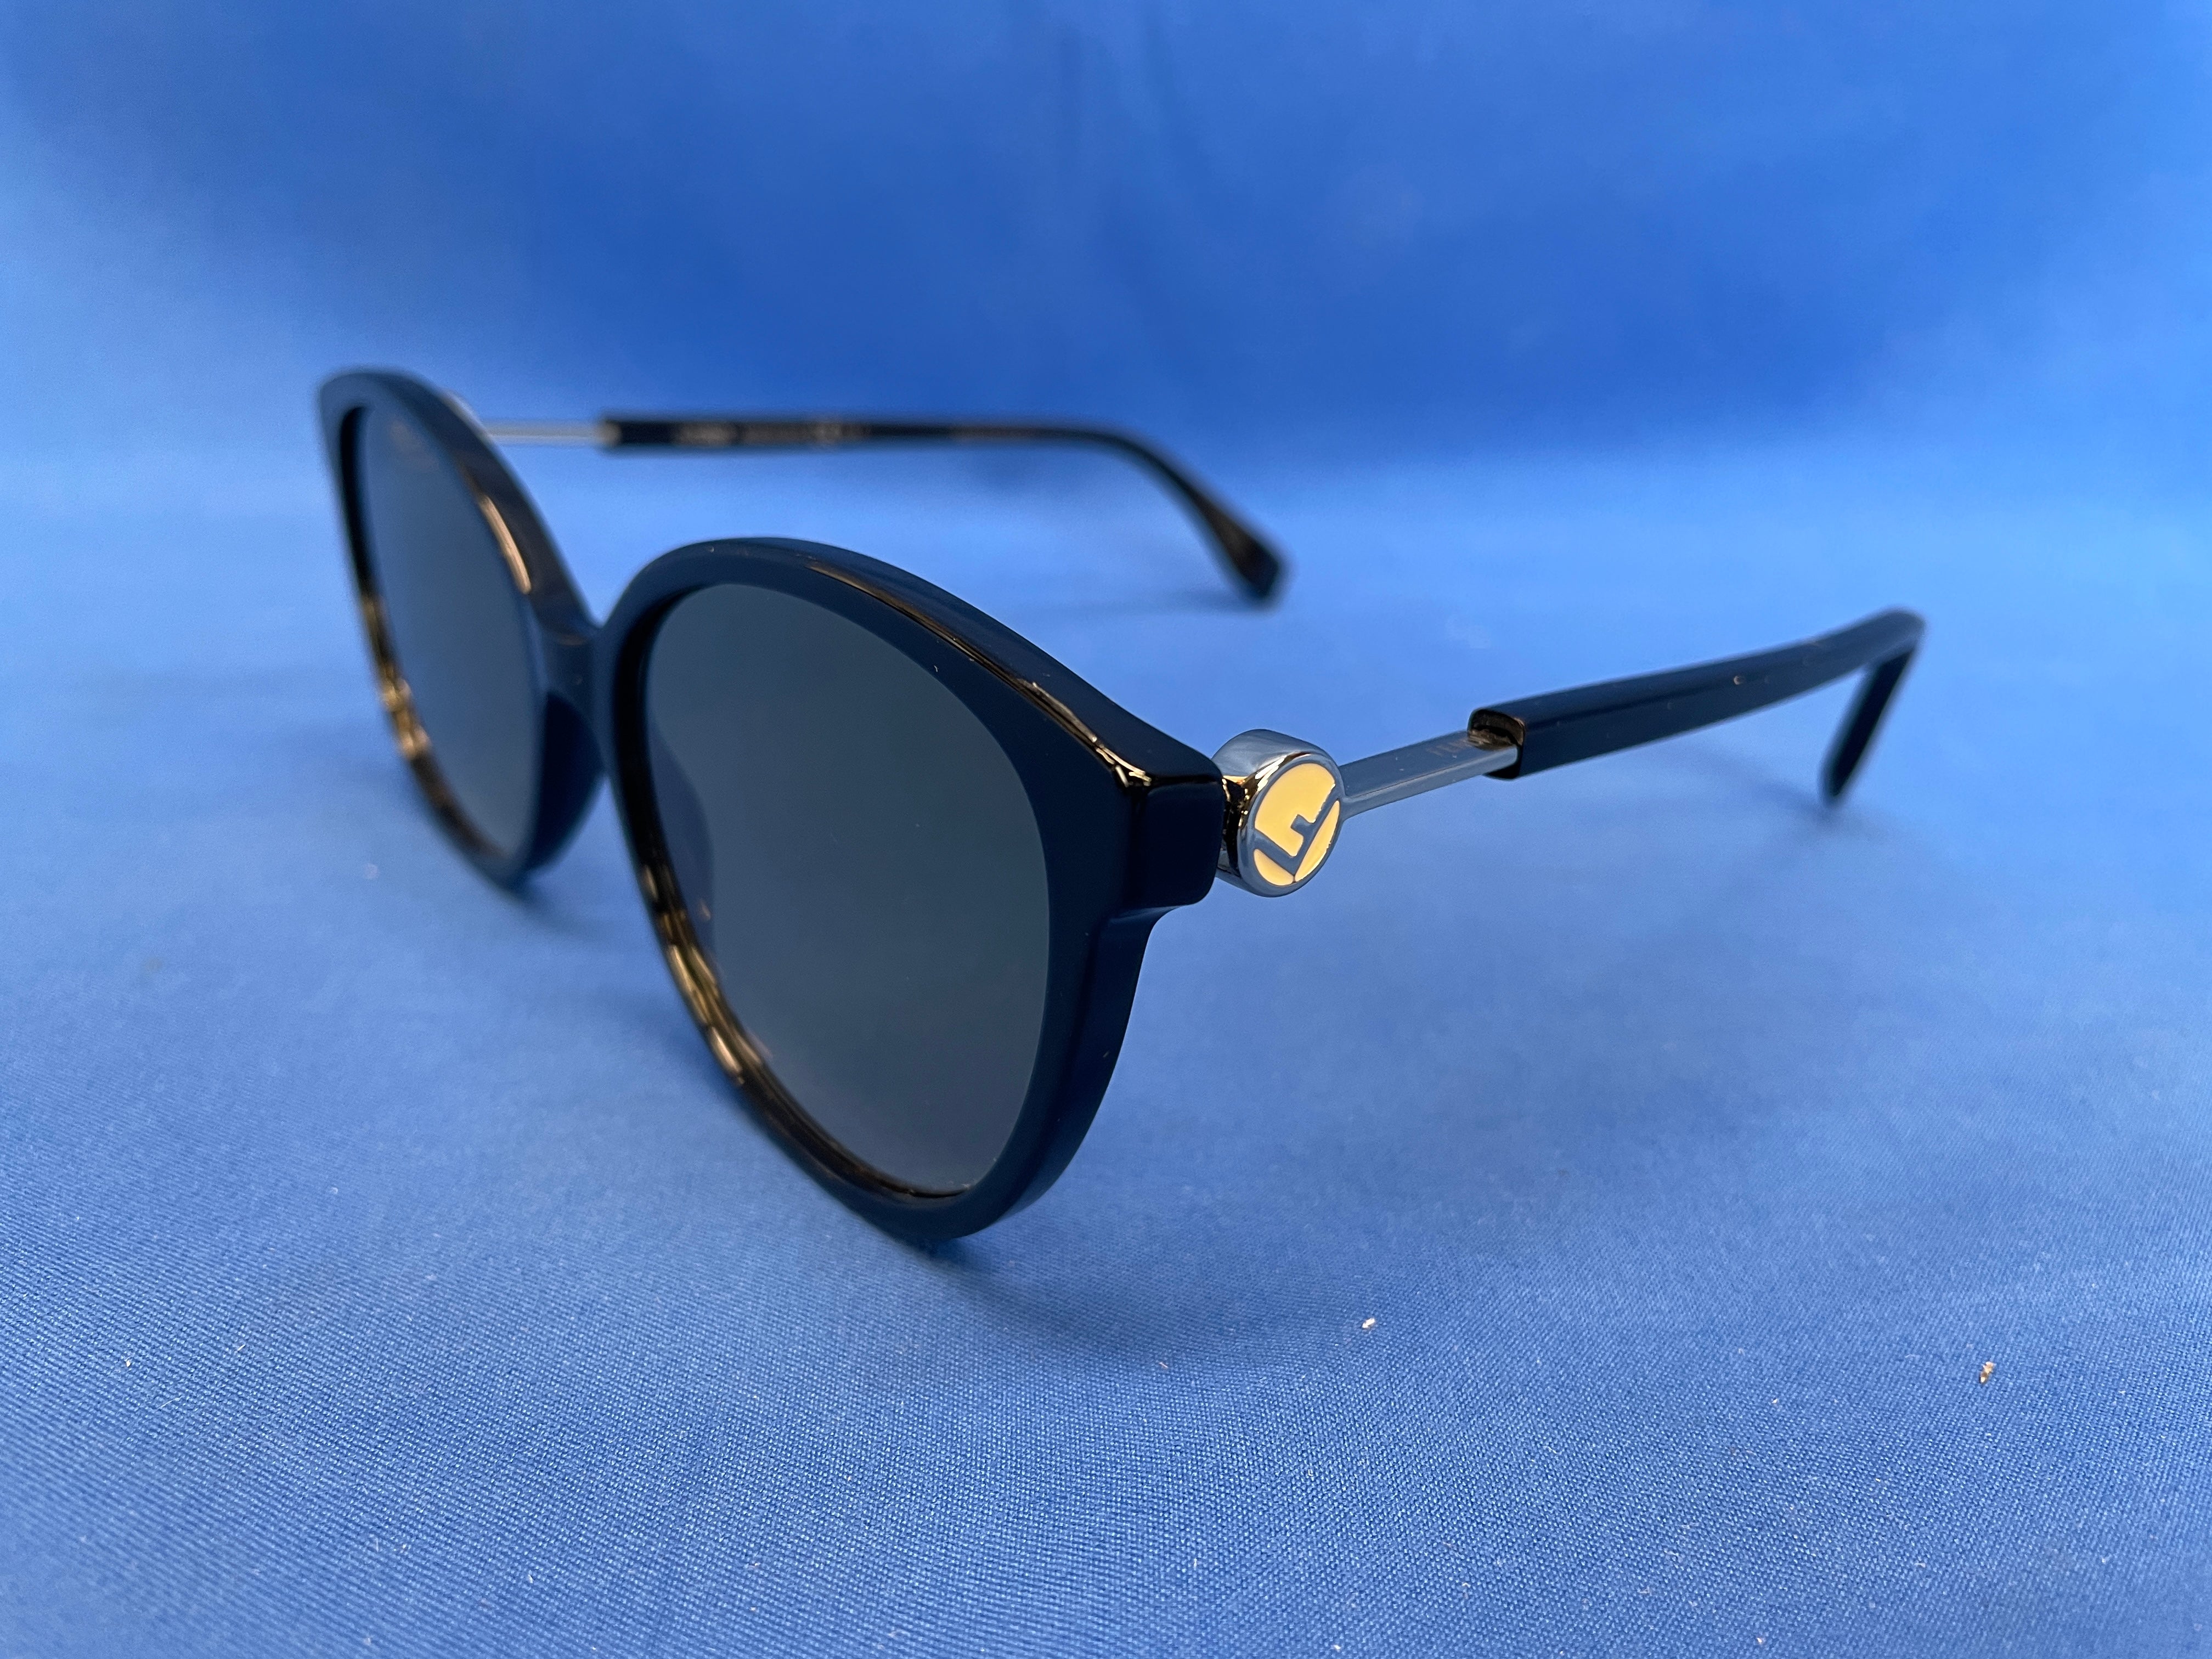 Fendi FF0373/S 807 Black Round Sunglasses